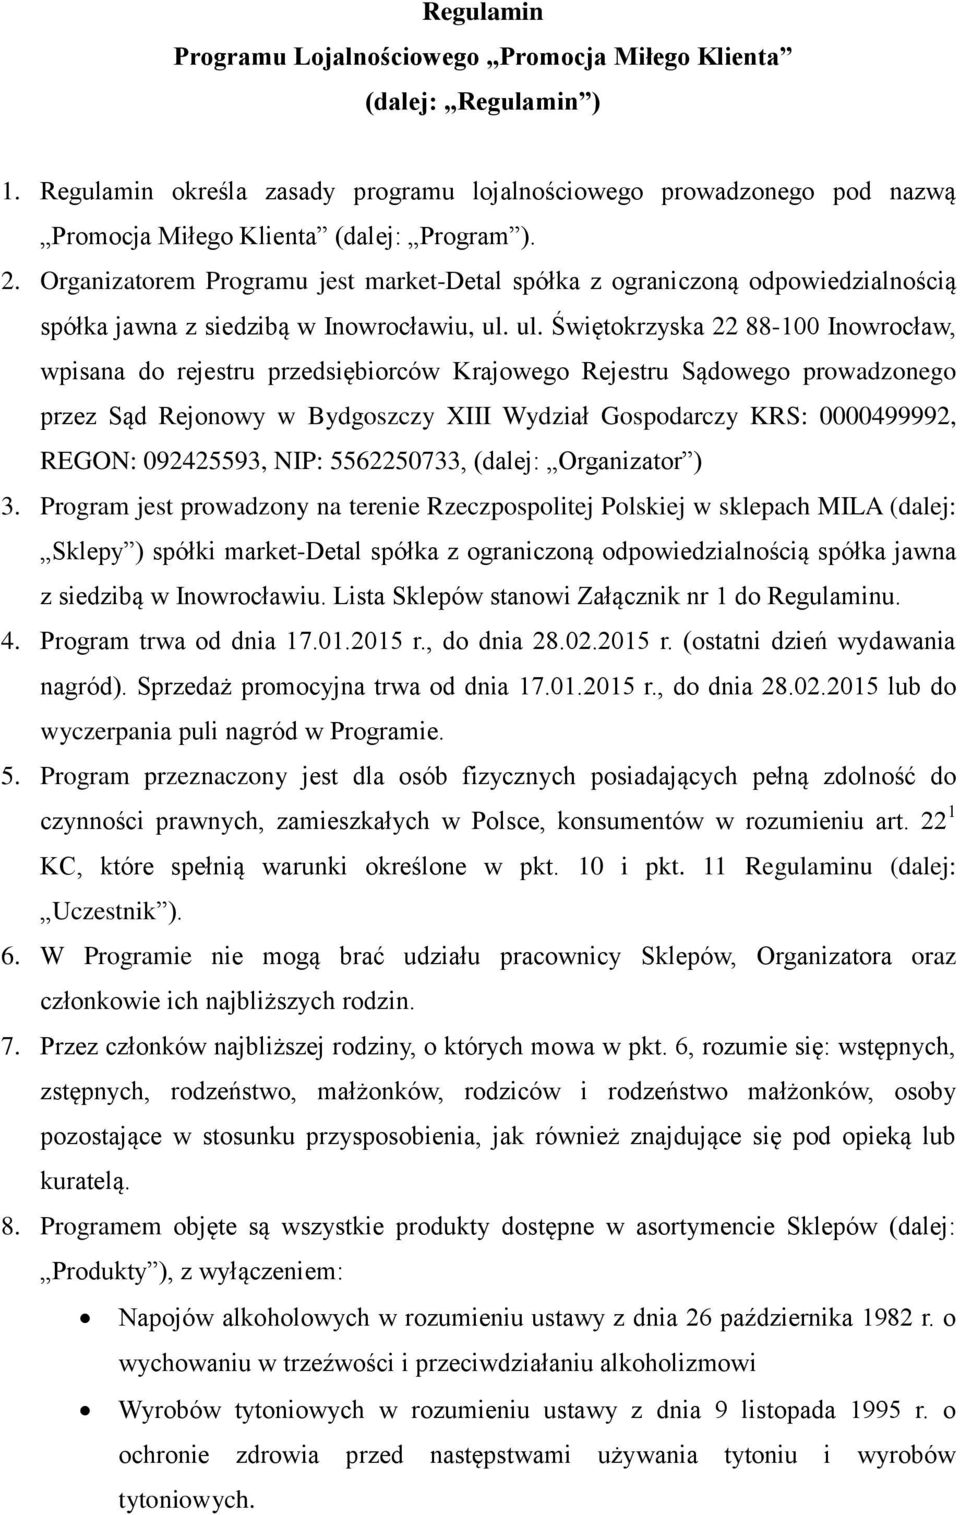 ul. Świętokrzyska 22 88-100 Inowrocław, wpisana do rejestru przedsiębiorców Krajowego Rejestru Sądowego prowadzonego przez Sąd Rejonowy w Bydgoszczy XIII Wydział Gospodarczy KRS: 0000499992, REGON: